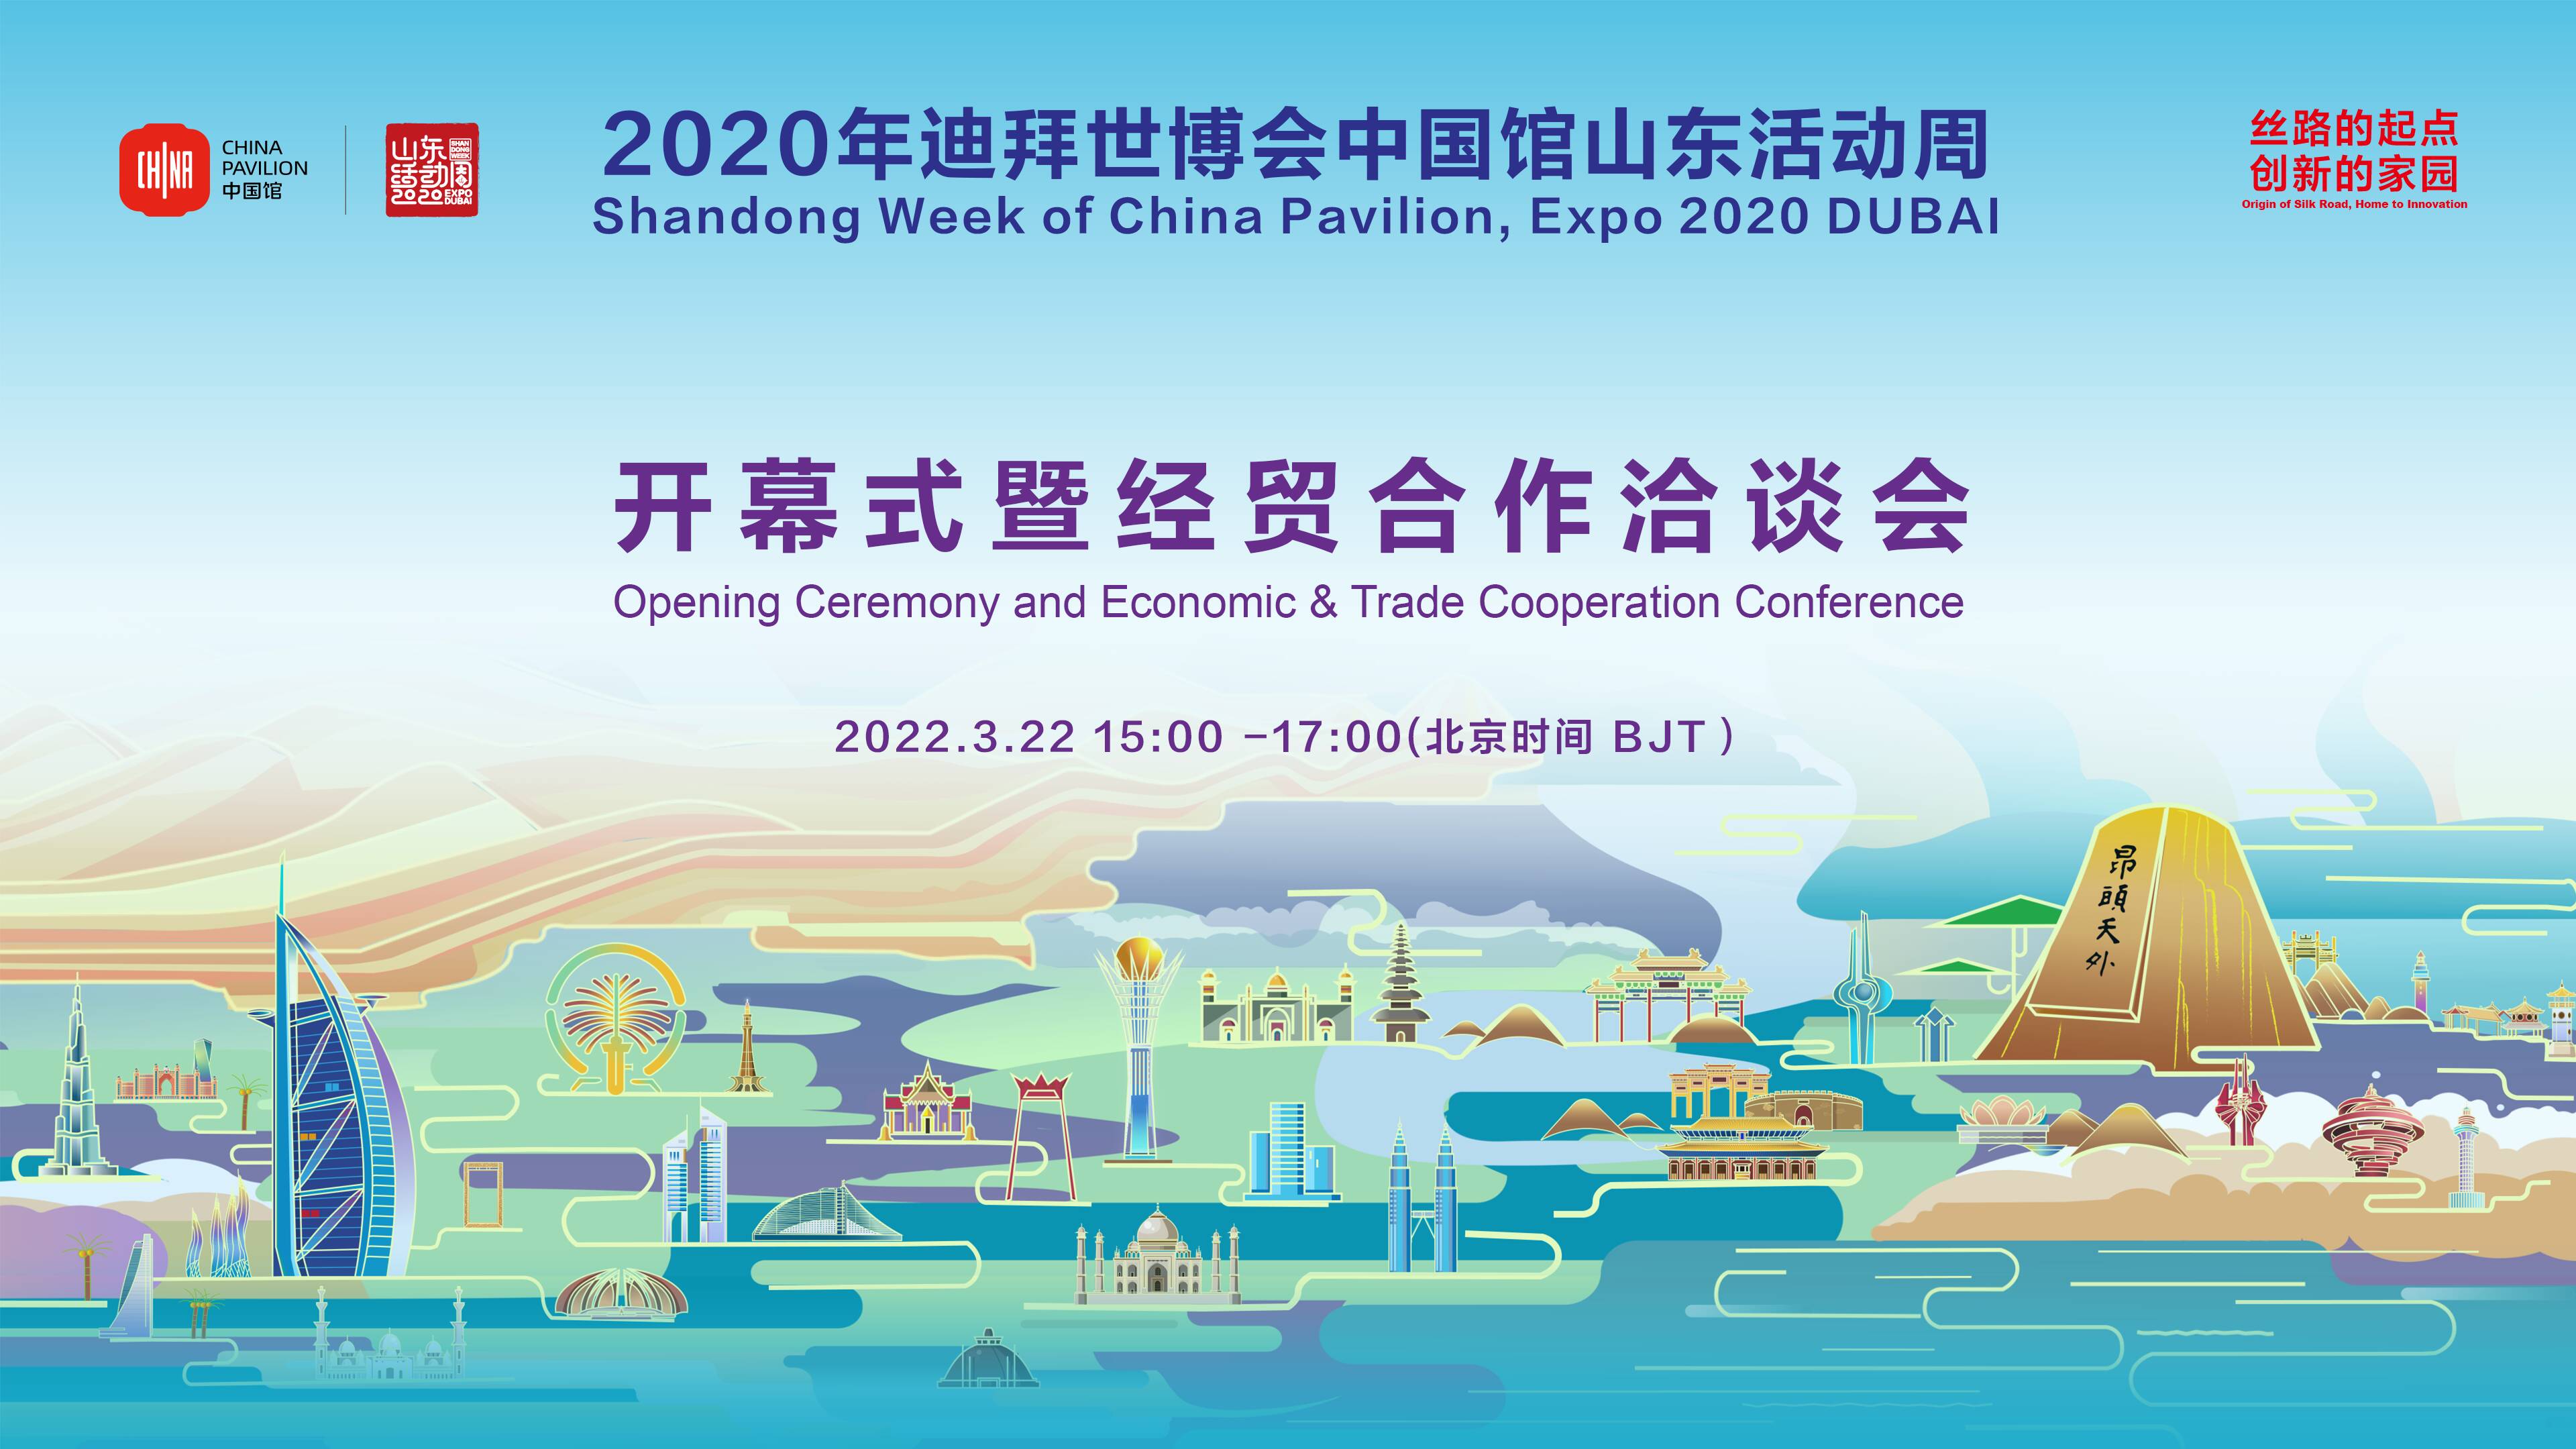 2020迪拜世博会中国馆山东活动周开幕式暨经贸合作洽谈会成功举办